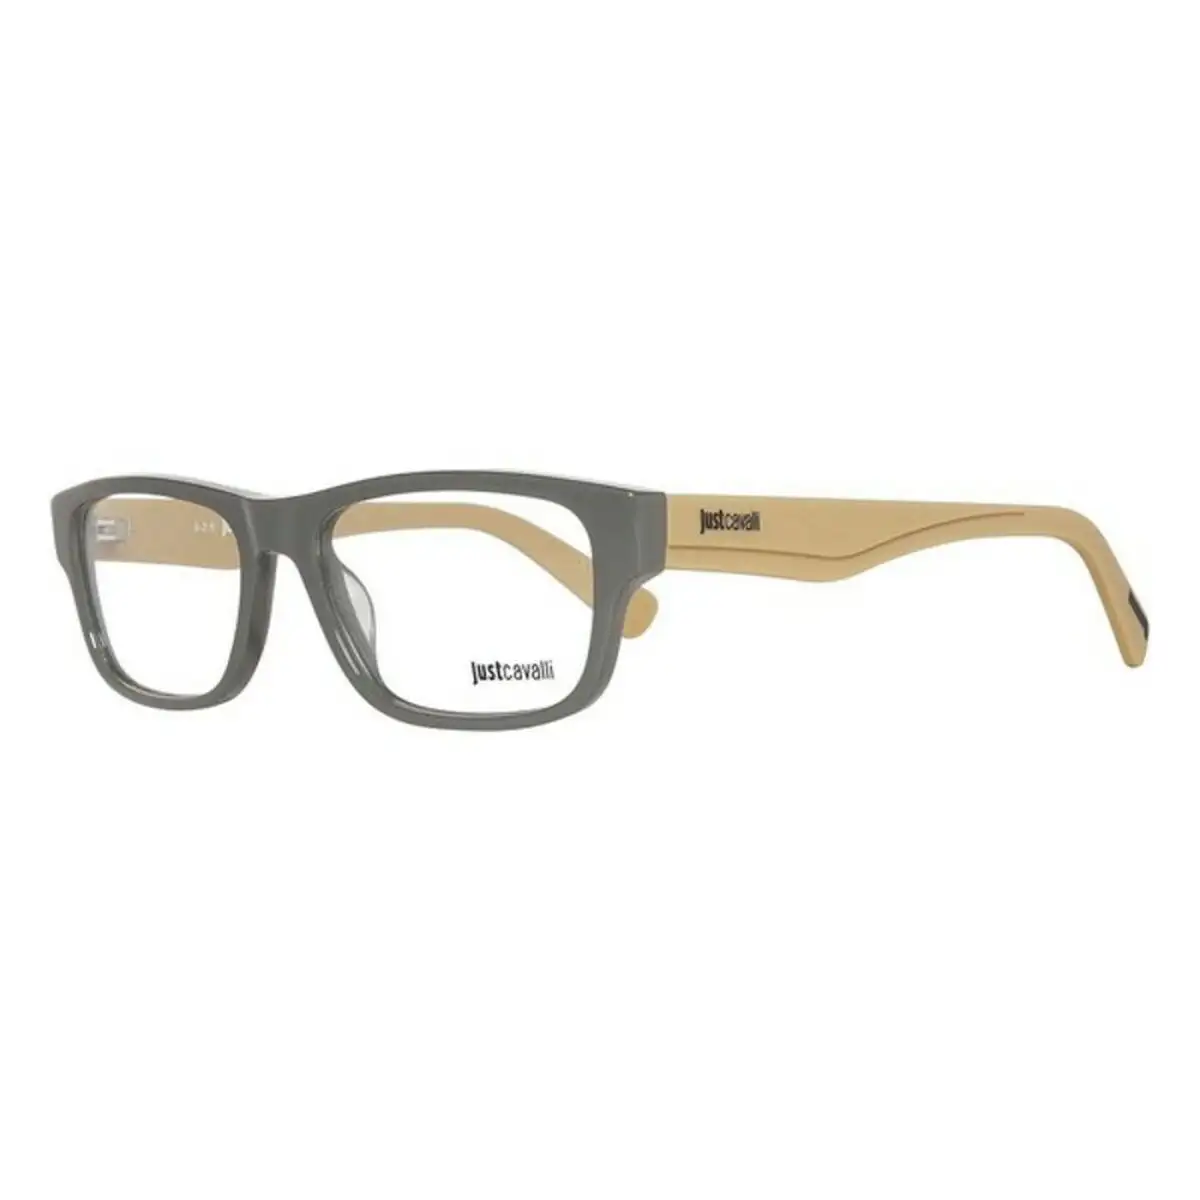 Monture de lunettes unisexe just cavalli jc0761 020 52 o 52 mm o 52 mm _3385. DIAYTAR SENEGAL - Où Choisir Devient un Plaisir. Découvrez notre boutique en ligne et choisissez parmi une variété de produits qui satisferont tous vos besoins.